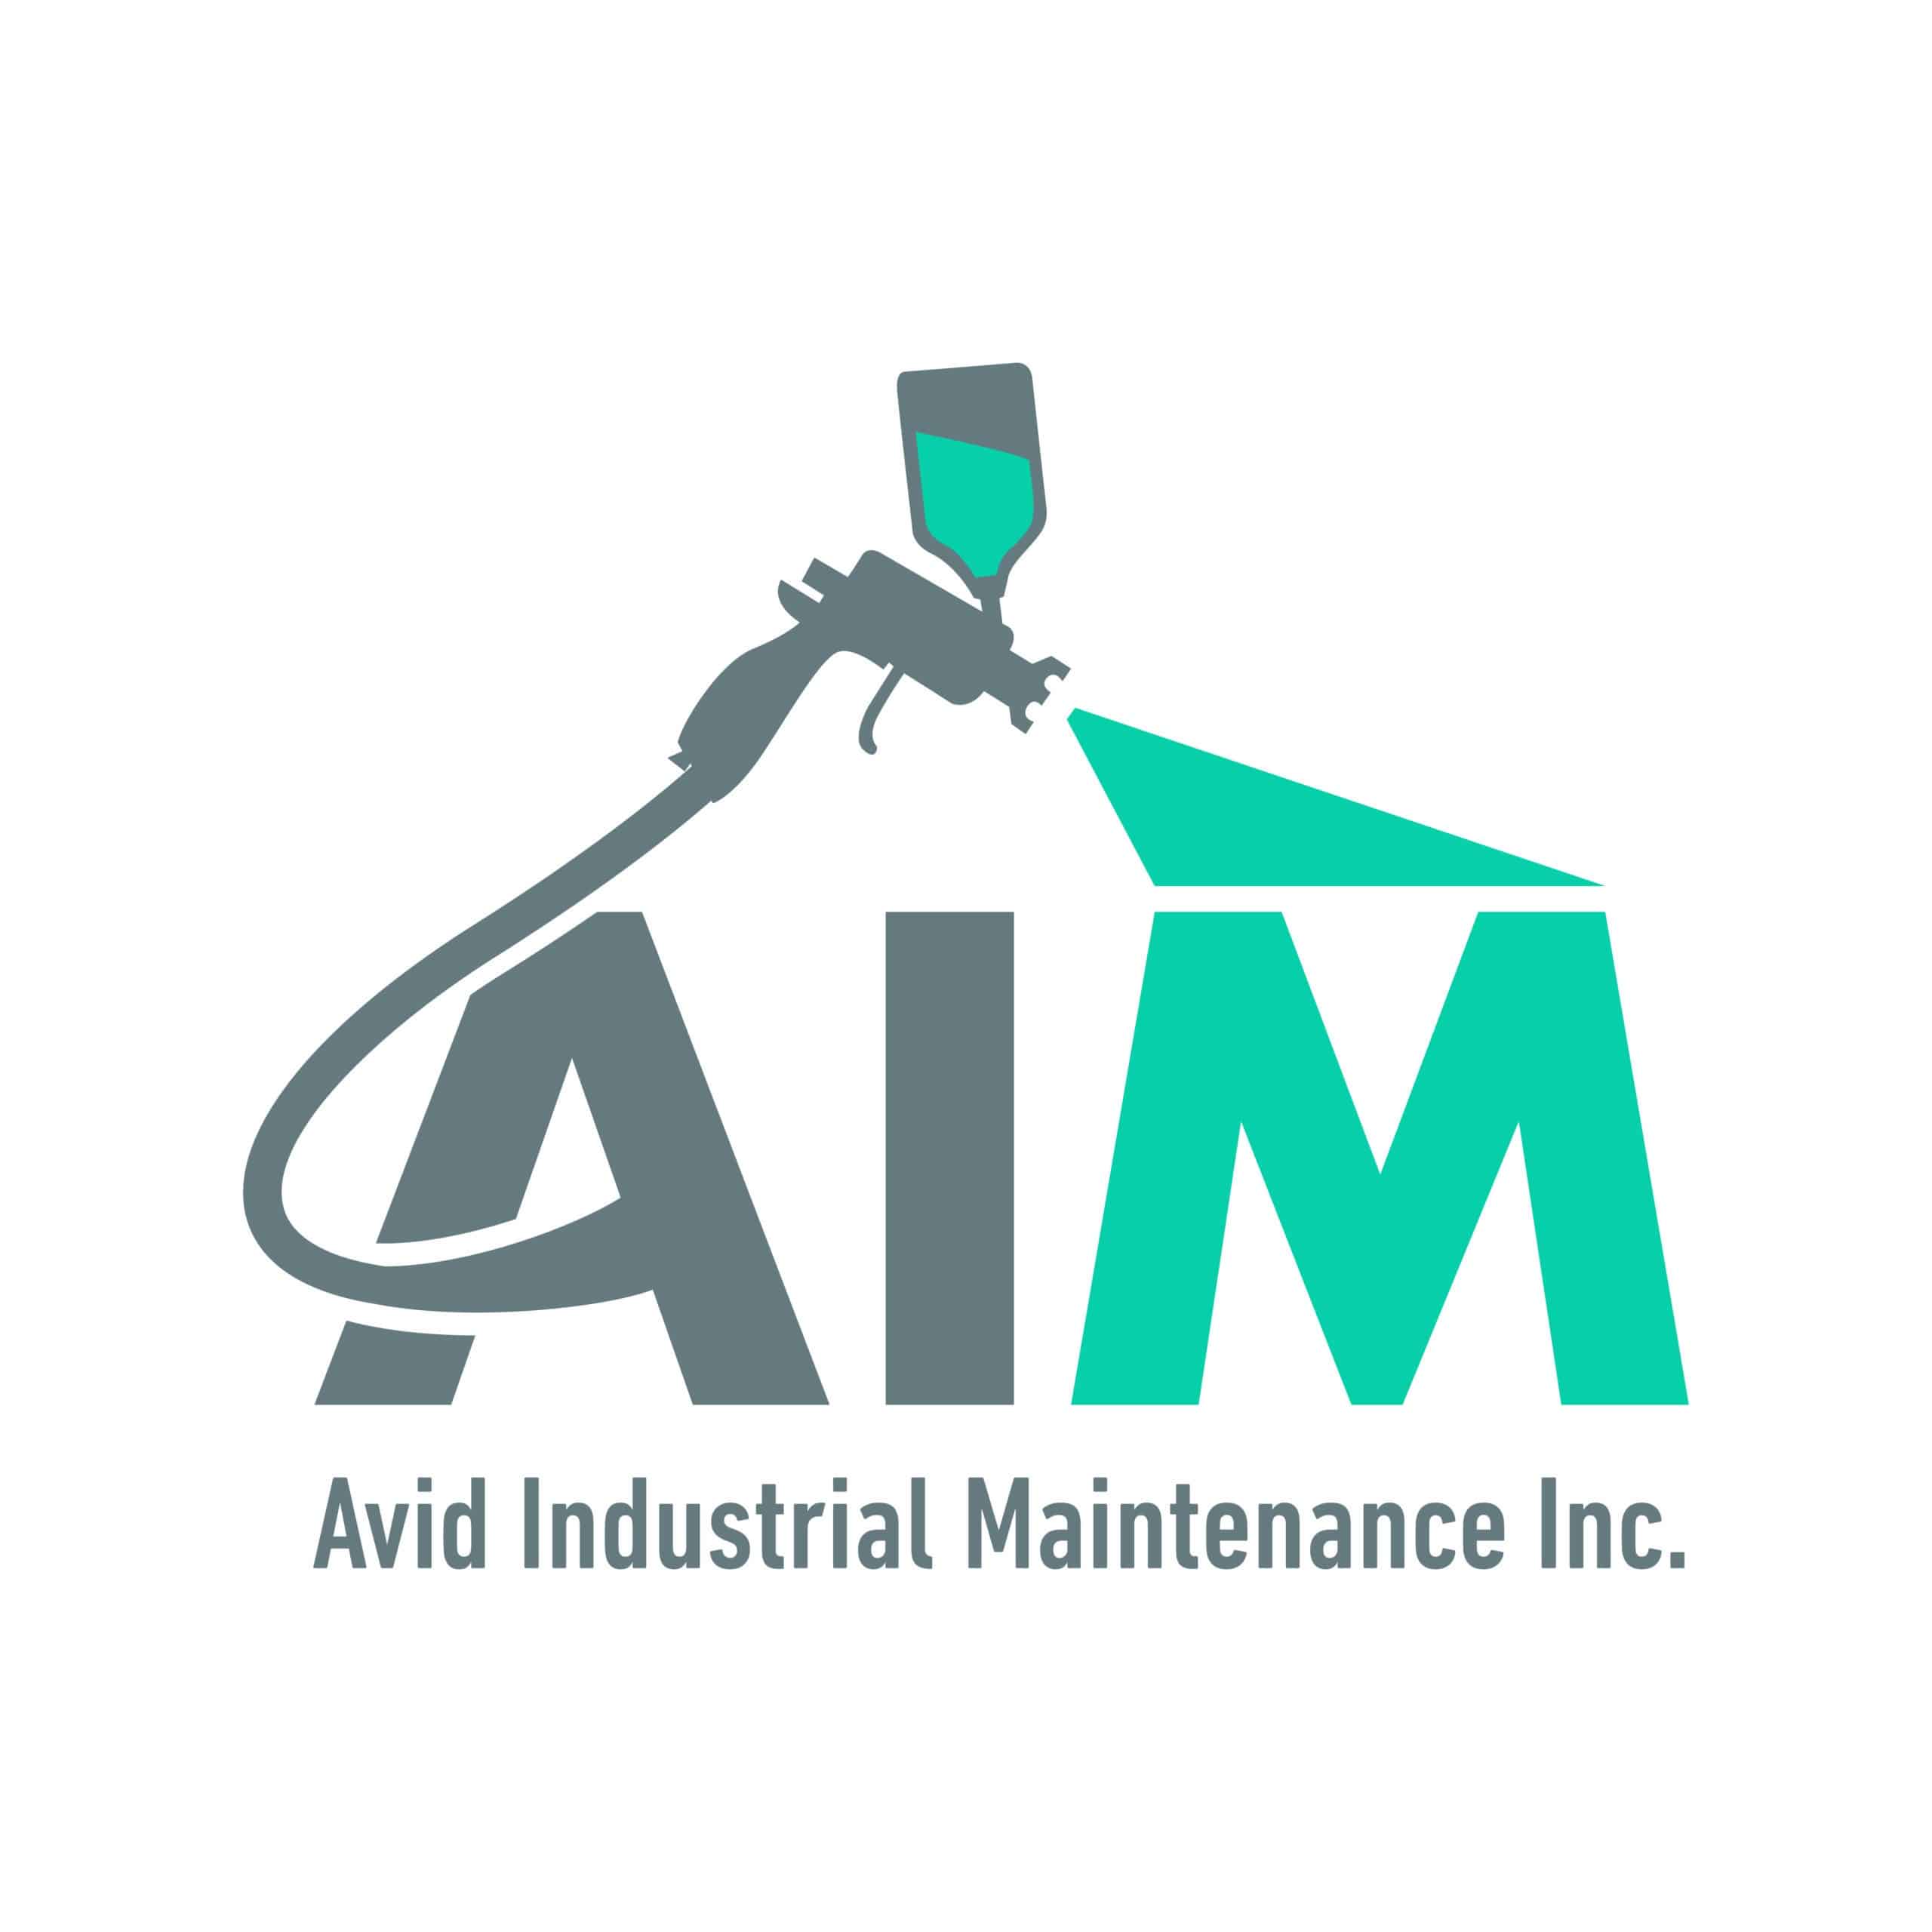 Avid Industrial Maintenance